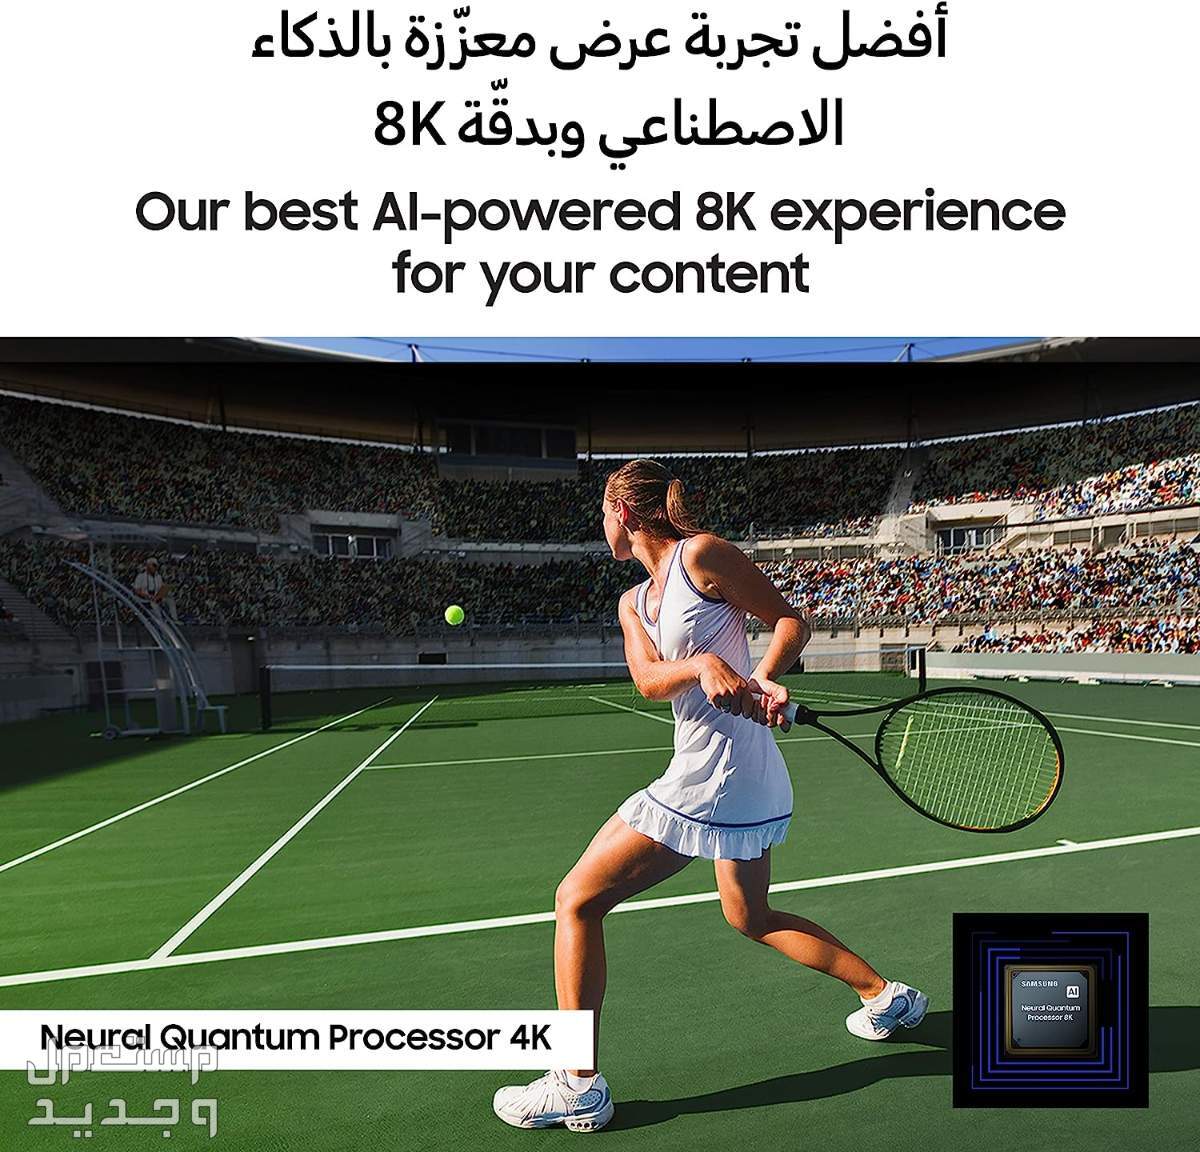 سعر شاشة سامسونج 75 بوصة وهذه مميزاتها في المغرب شاشة سامسونج 75 بوصة بتقنية الـ 8k افضل تجربة عرض بالذكاء الاصطناعي